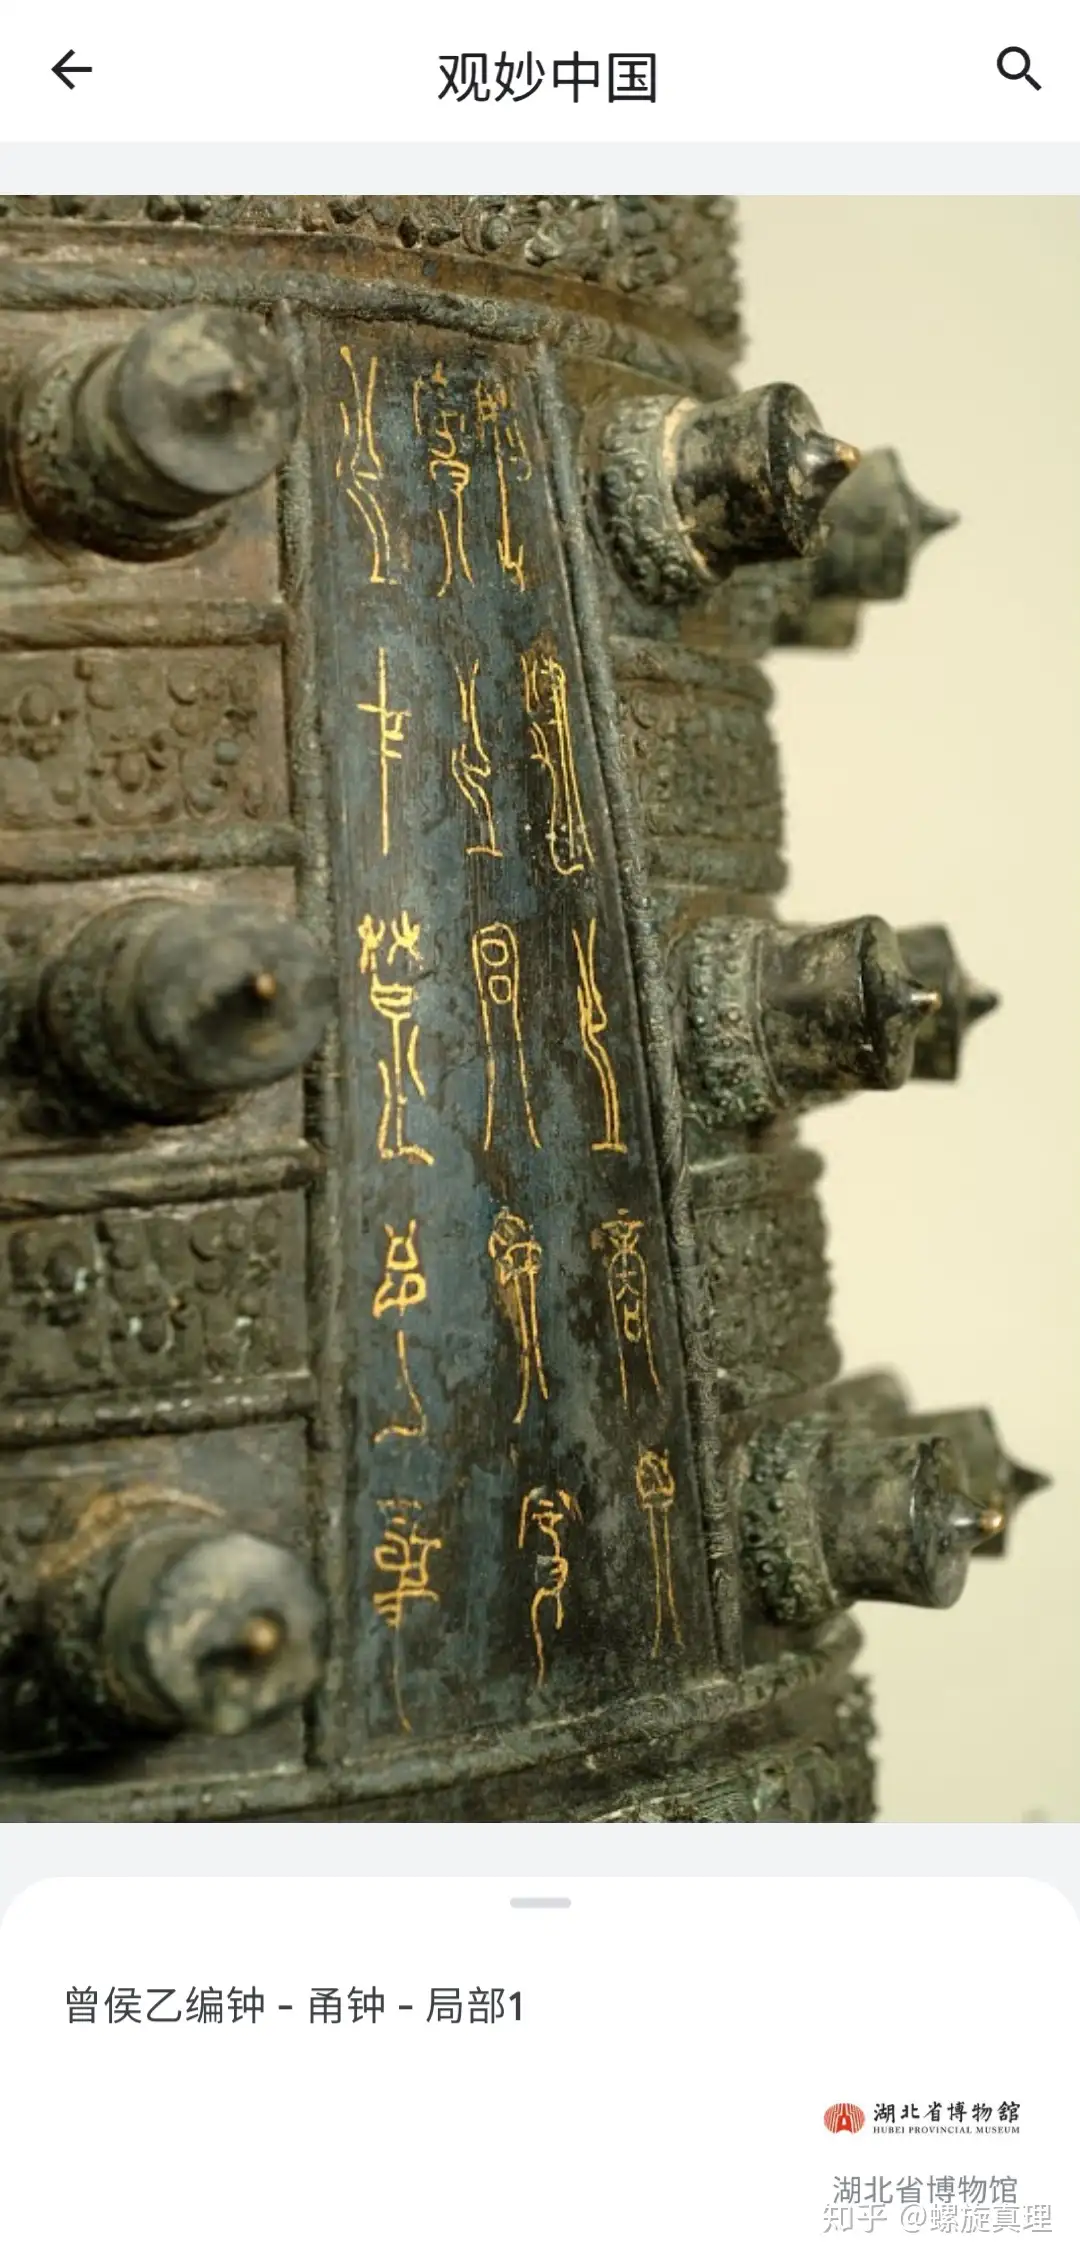 A 狩猟文様八花鏡 唐時代 中国 遺跡発掘品 明器 副葬品 墓地 地下 金工